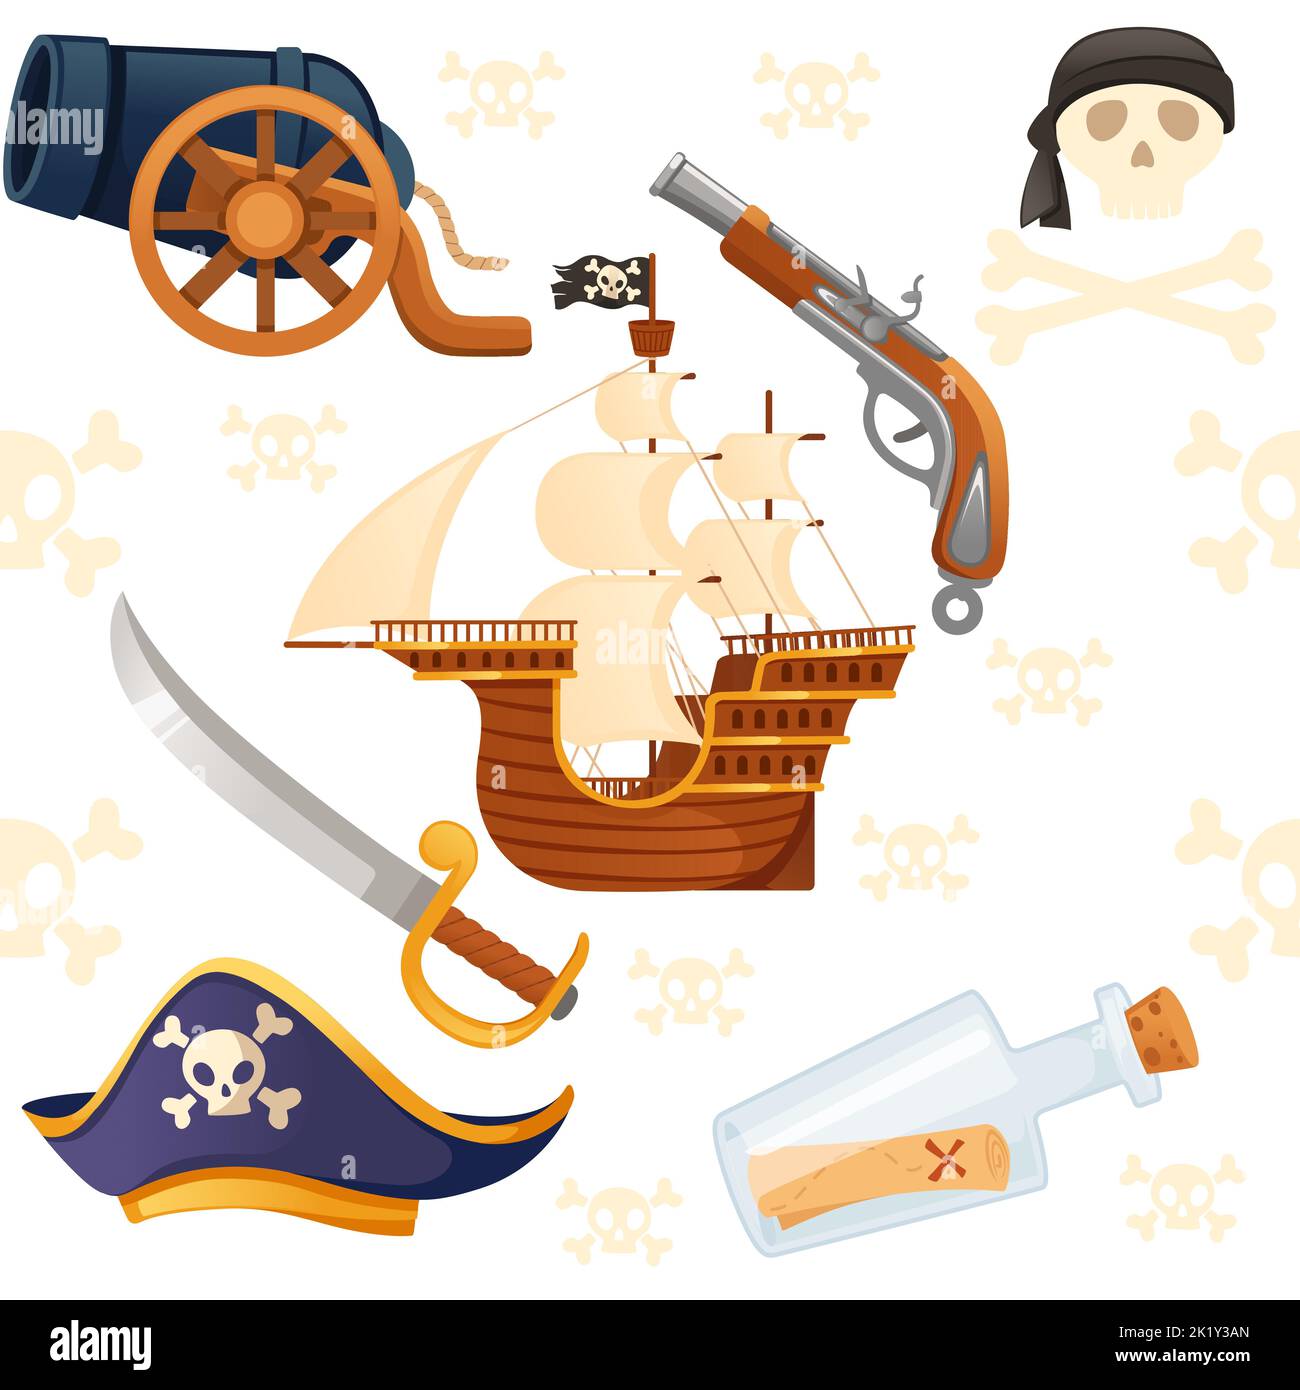 Motif fluide de thème pirate avec crâne de navire et illustration de vecteur arme sur fond blanc Illustration de Vecteur